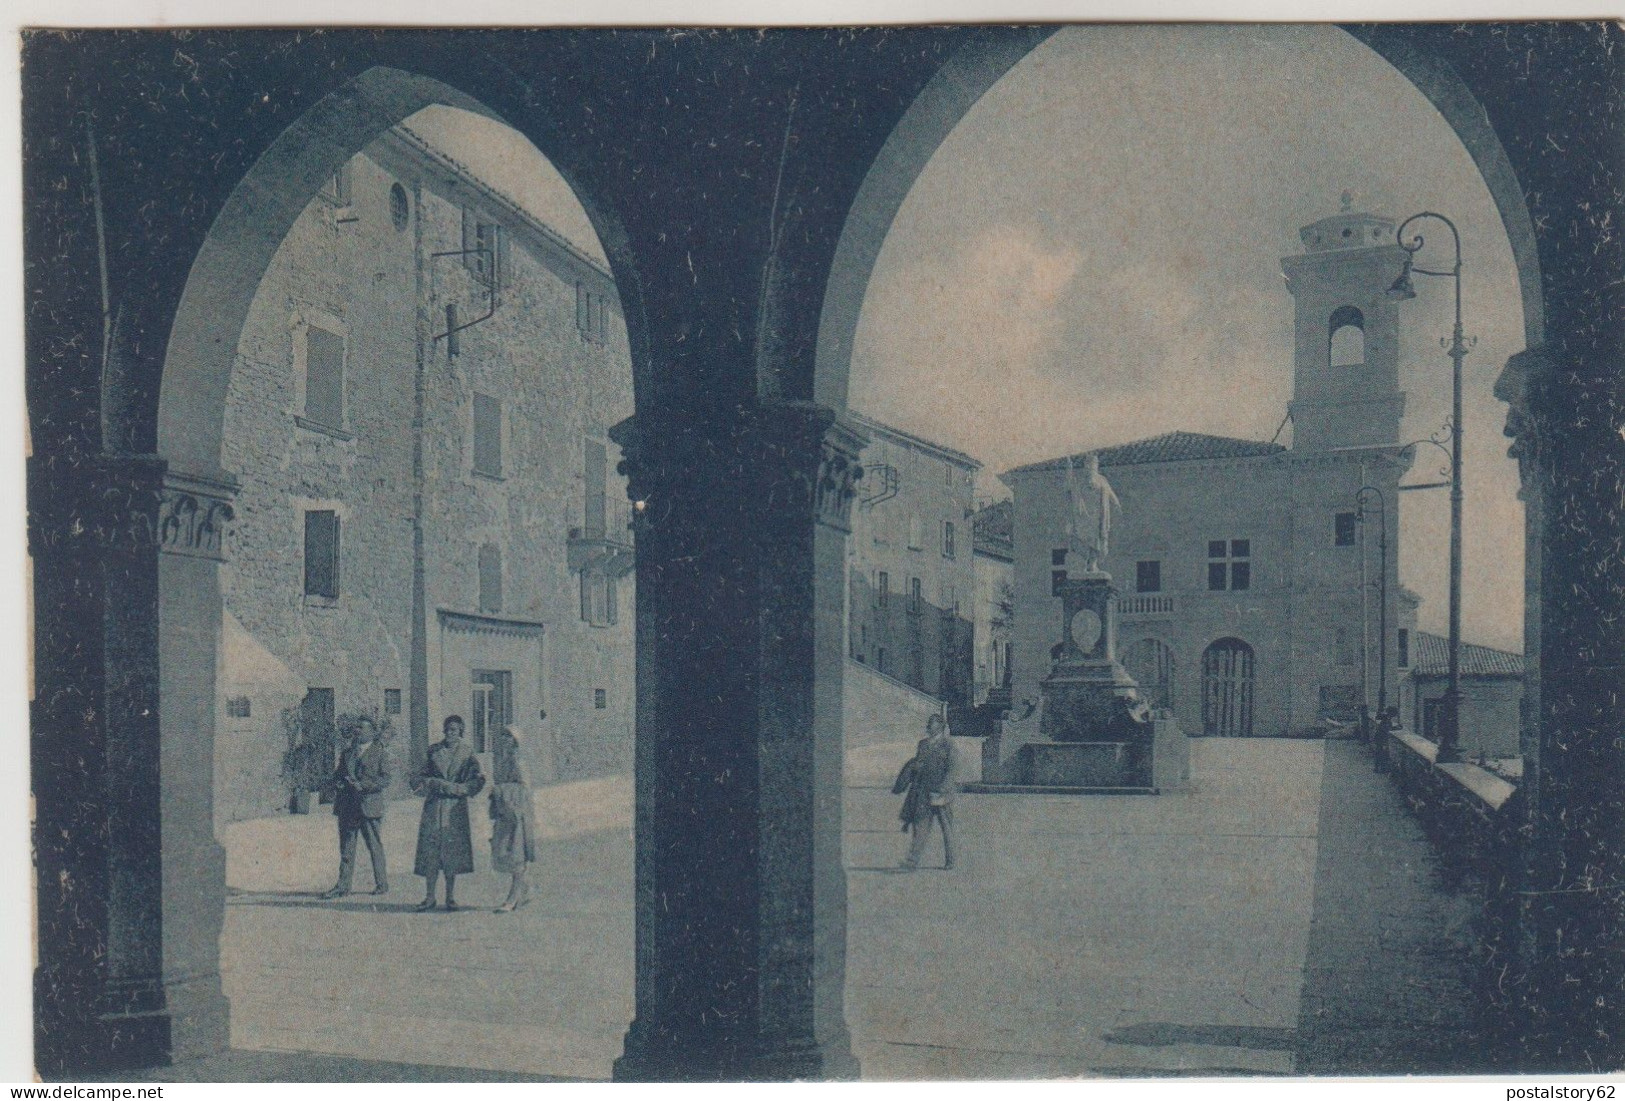 Repubblica Di San Marino - Piazza Della Libertà E Palazzo Delle Poste - Cartolina Non Viaggiata Inizio 900 - Saint-Marin